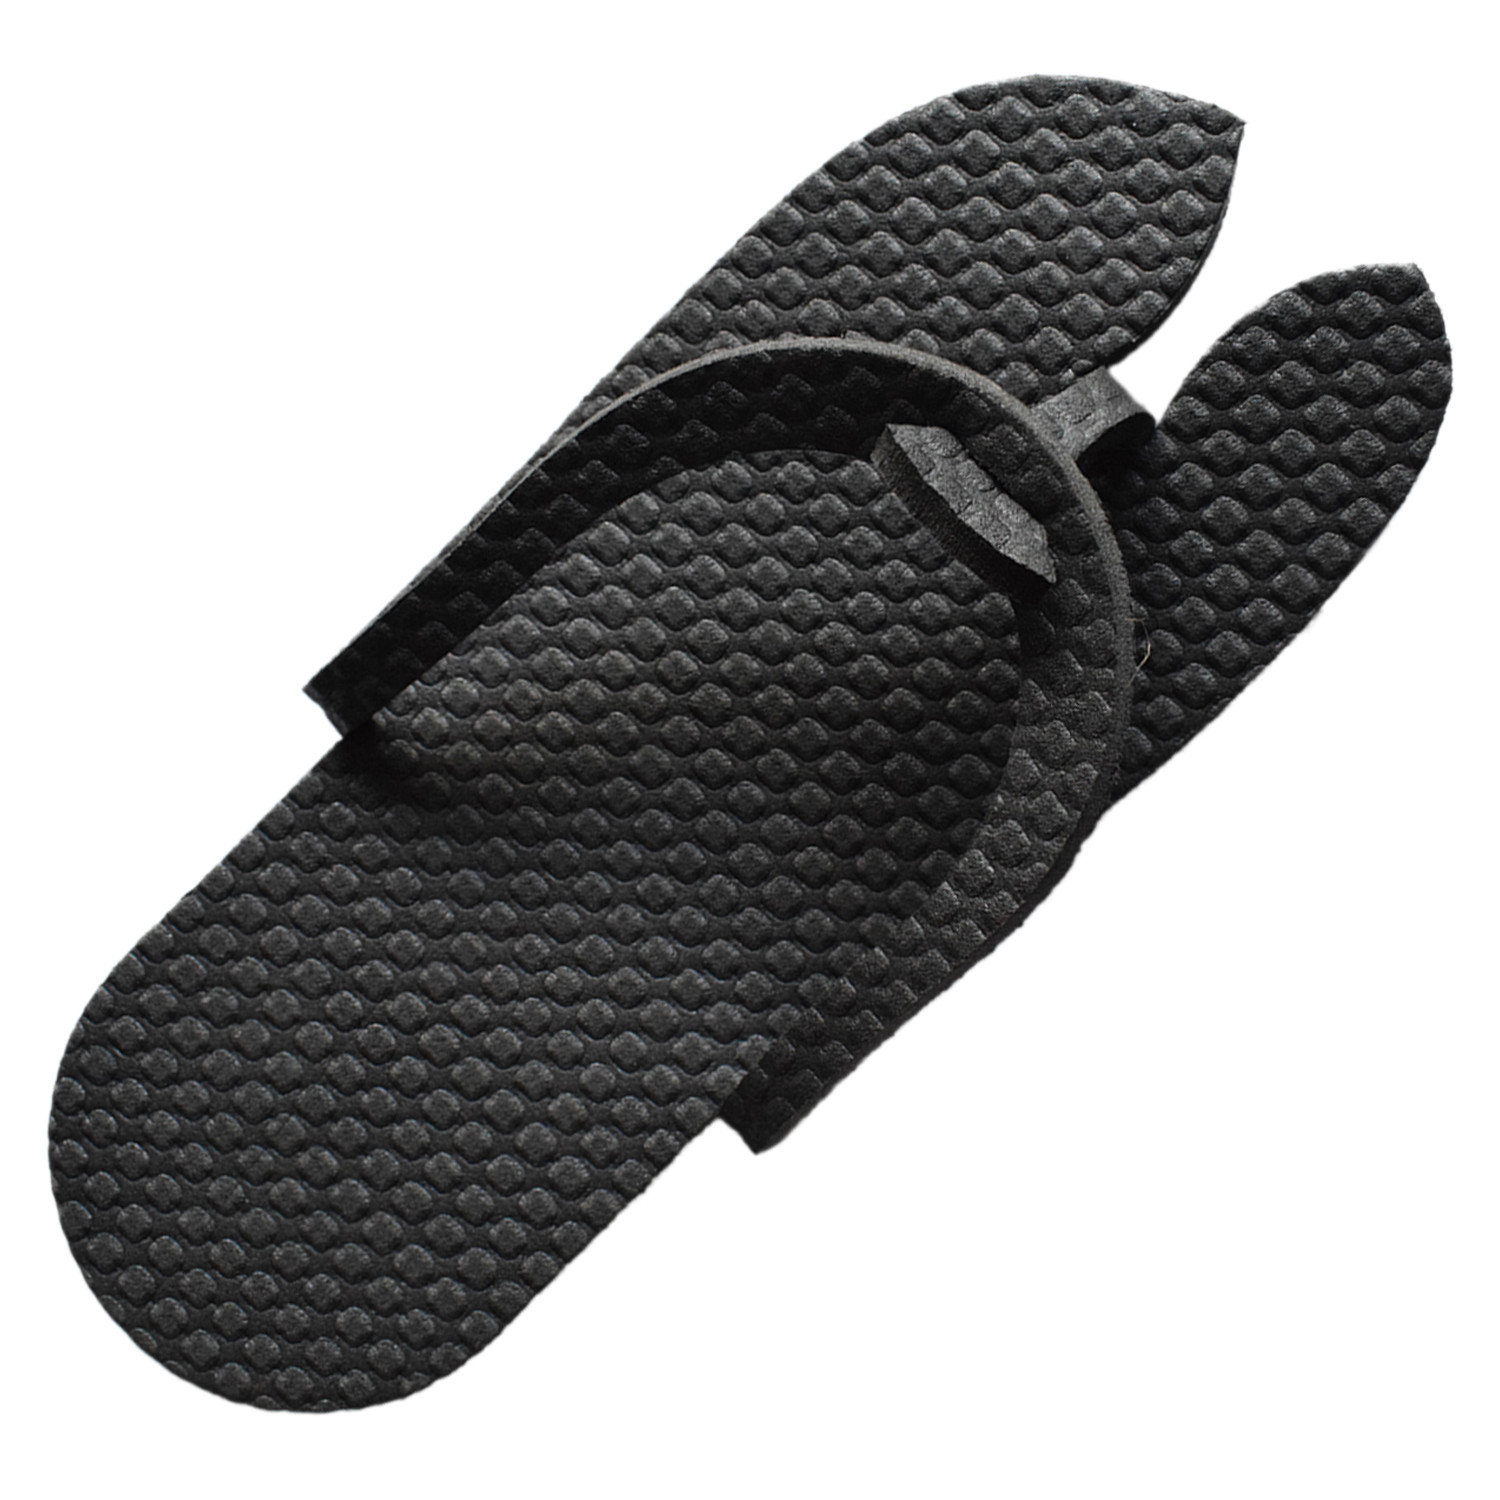 Kuber Industries Rubber Bathroom Slipper For Men & Women (Black) 54KM4212